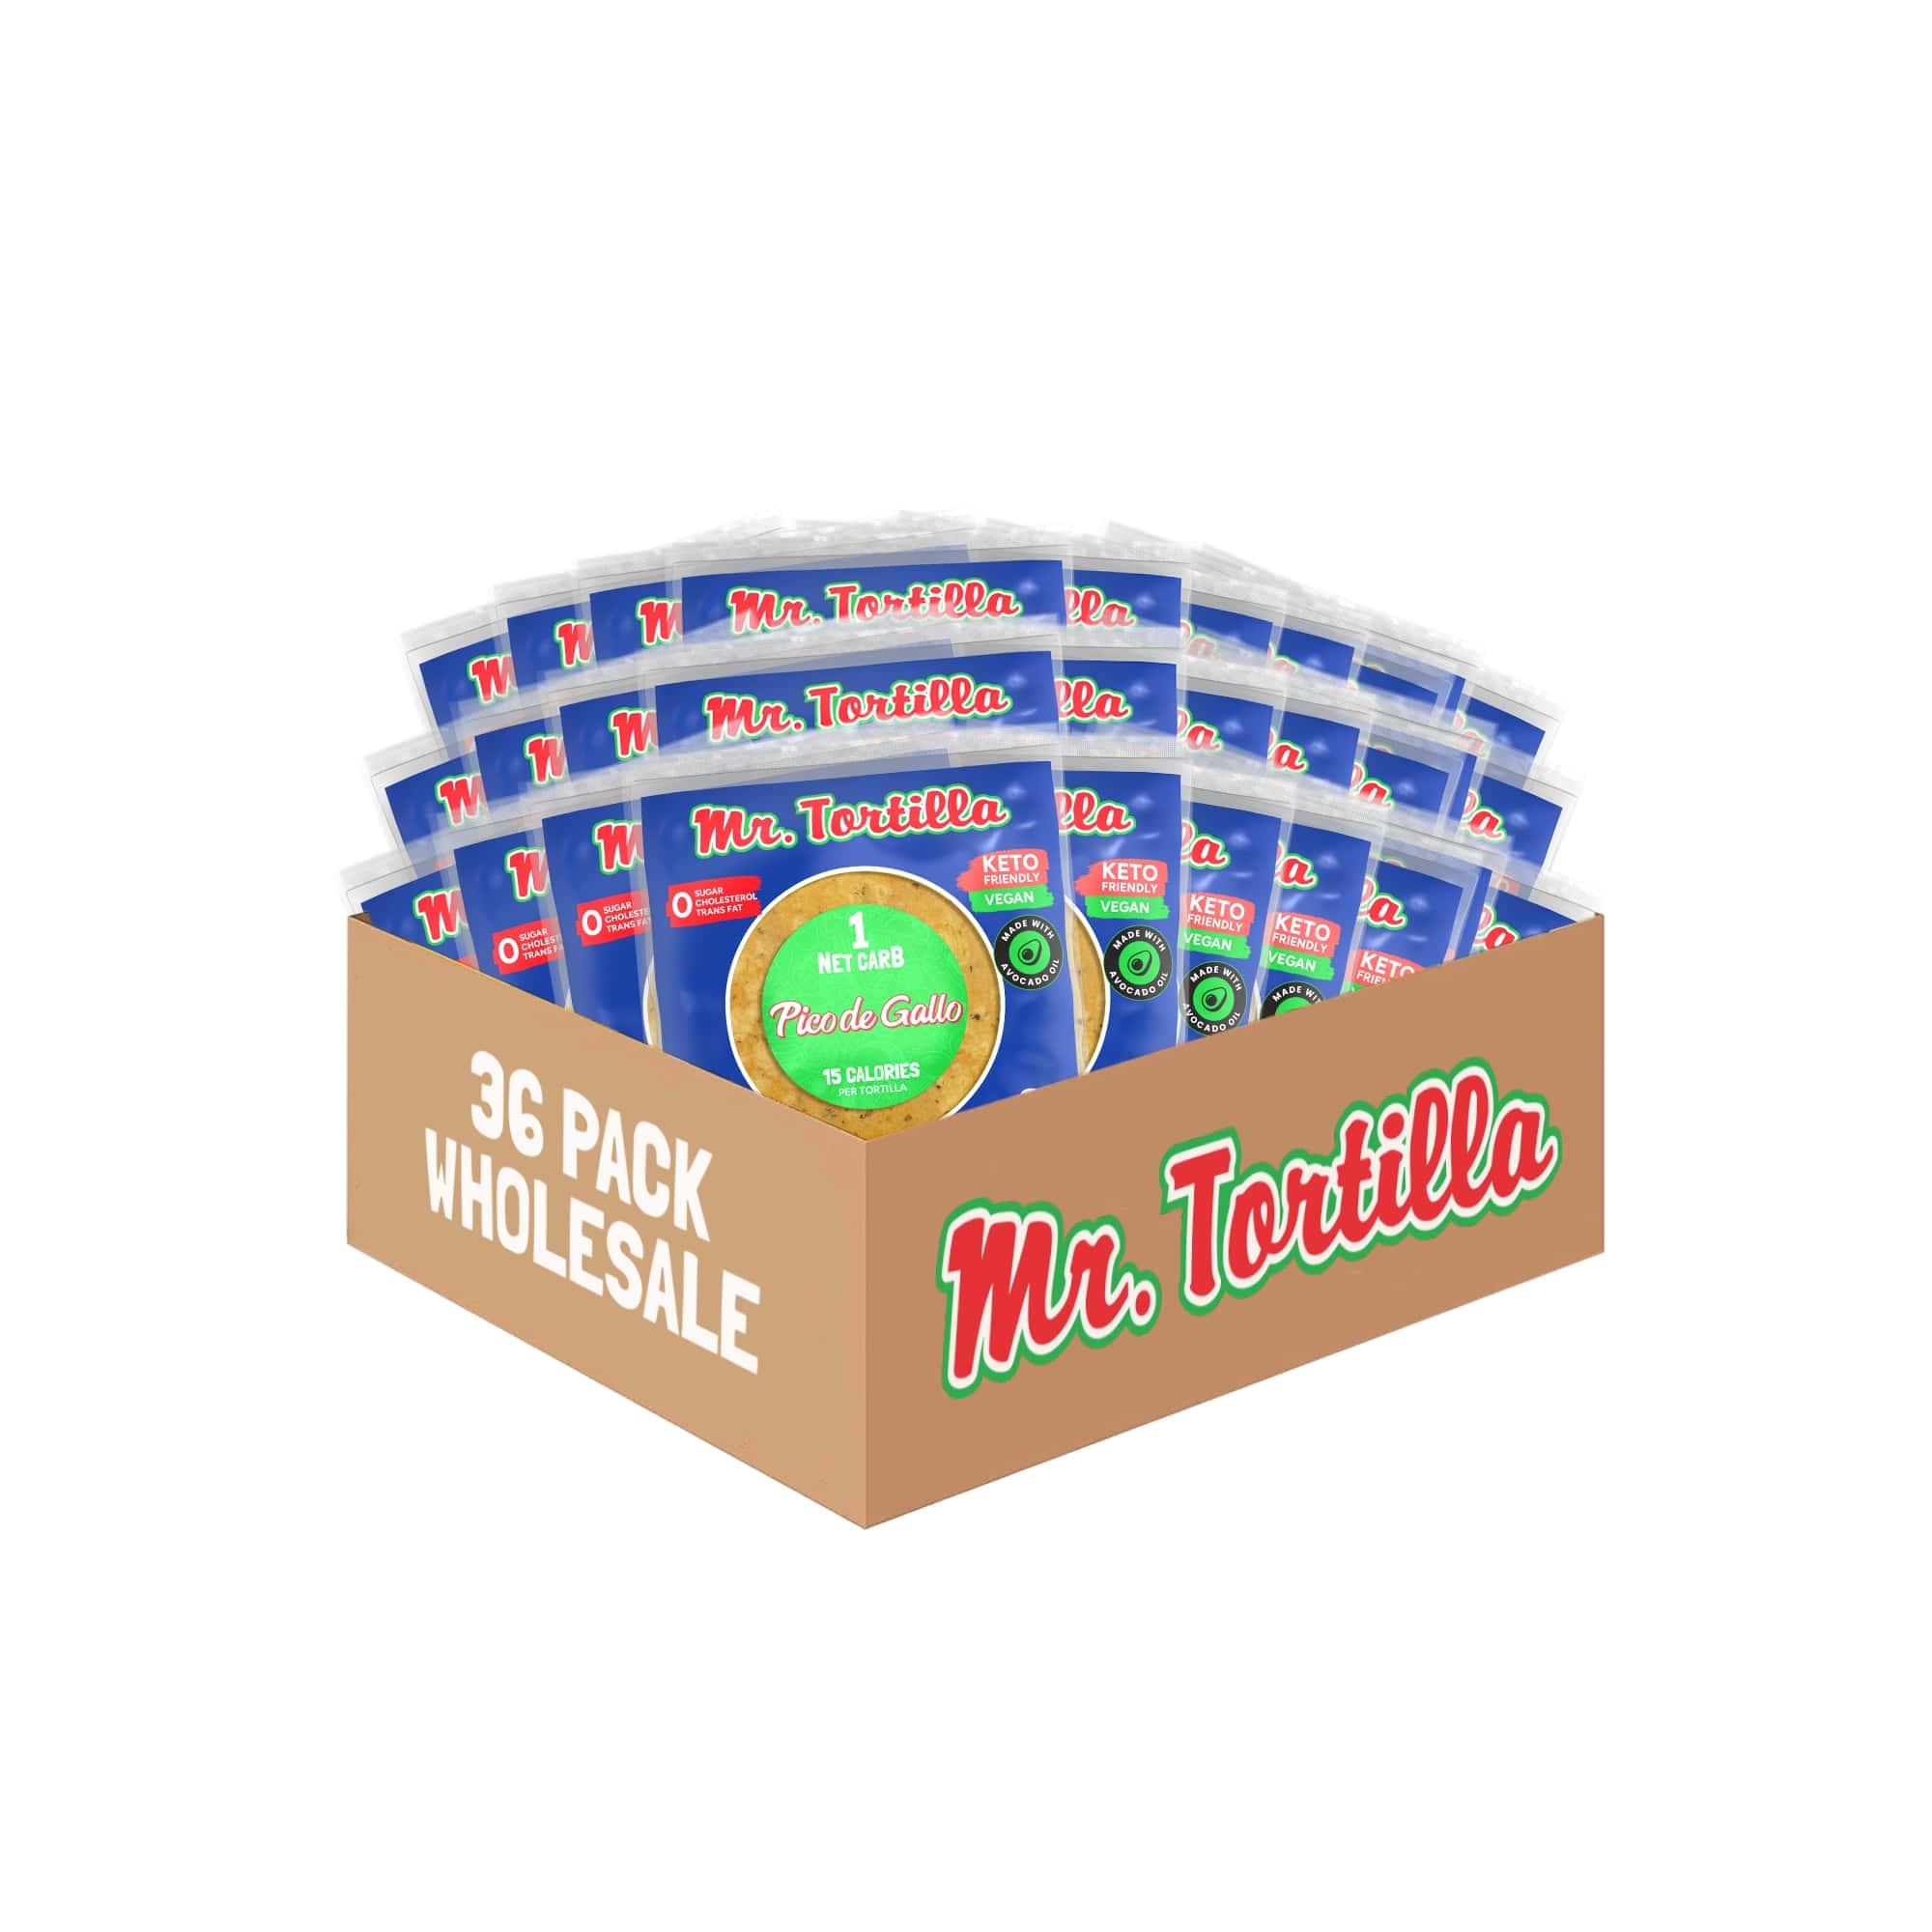 Wholesale 1 Net Carb Tortilla (36 Count)